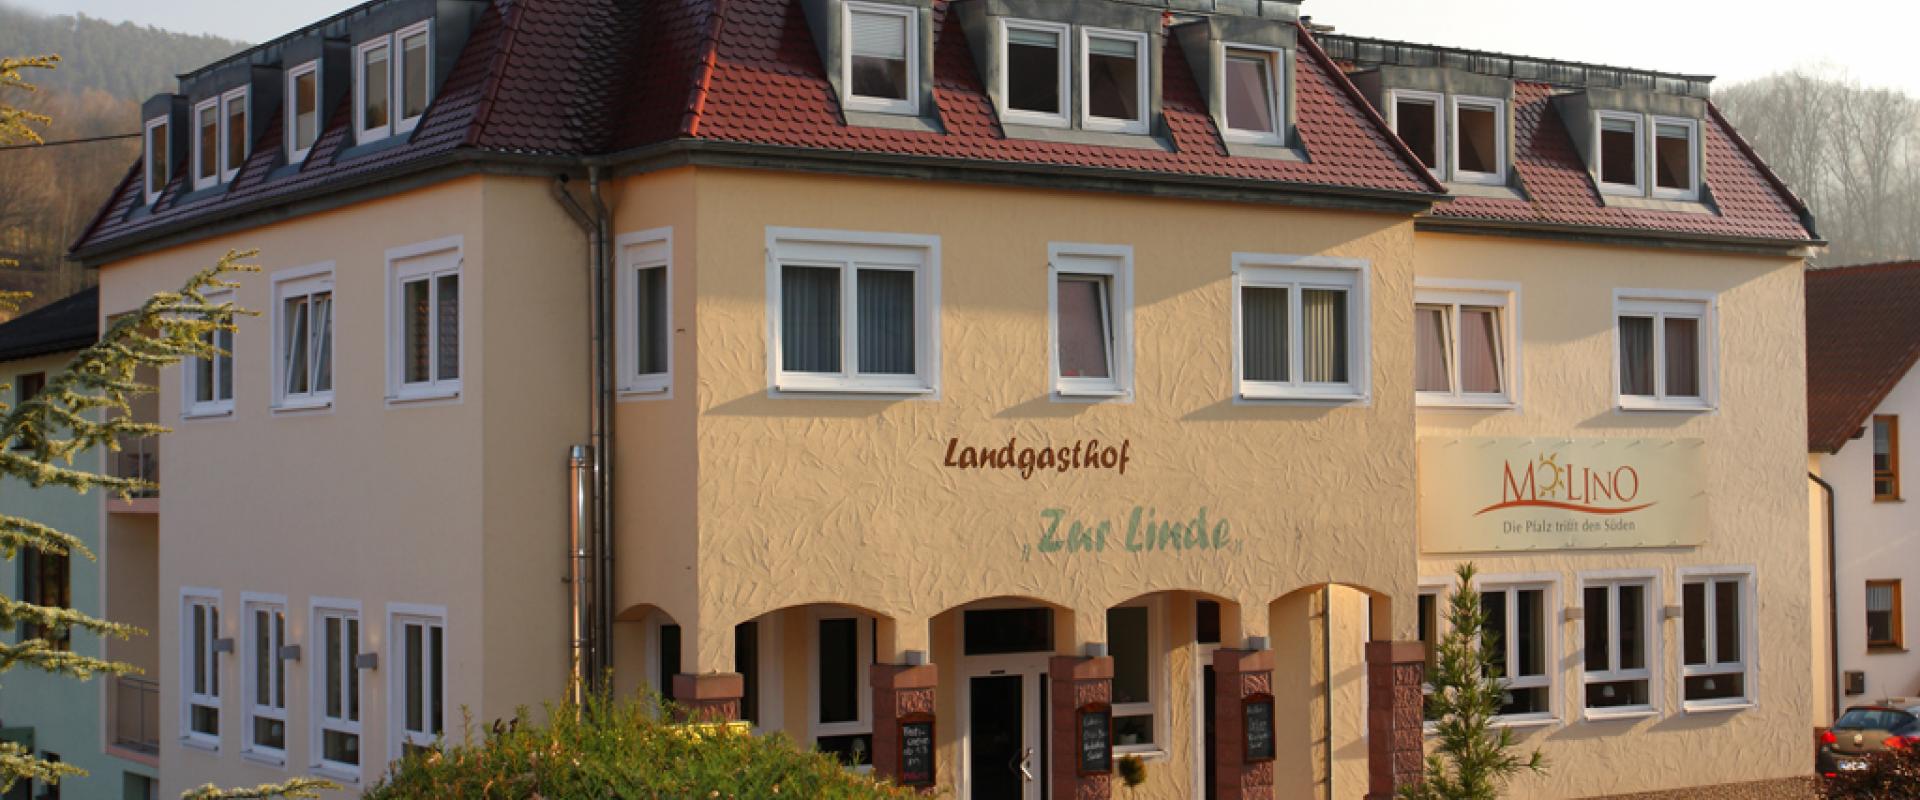 11622 Biker Hotel Zur Linde in der Pfalz.jpg